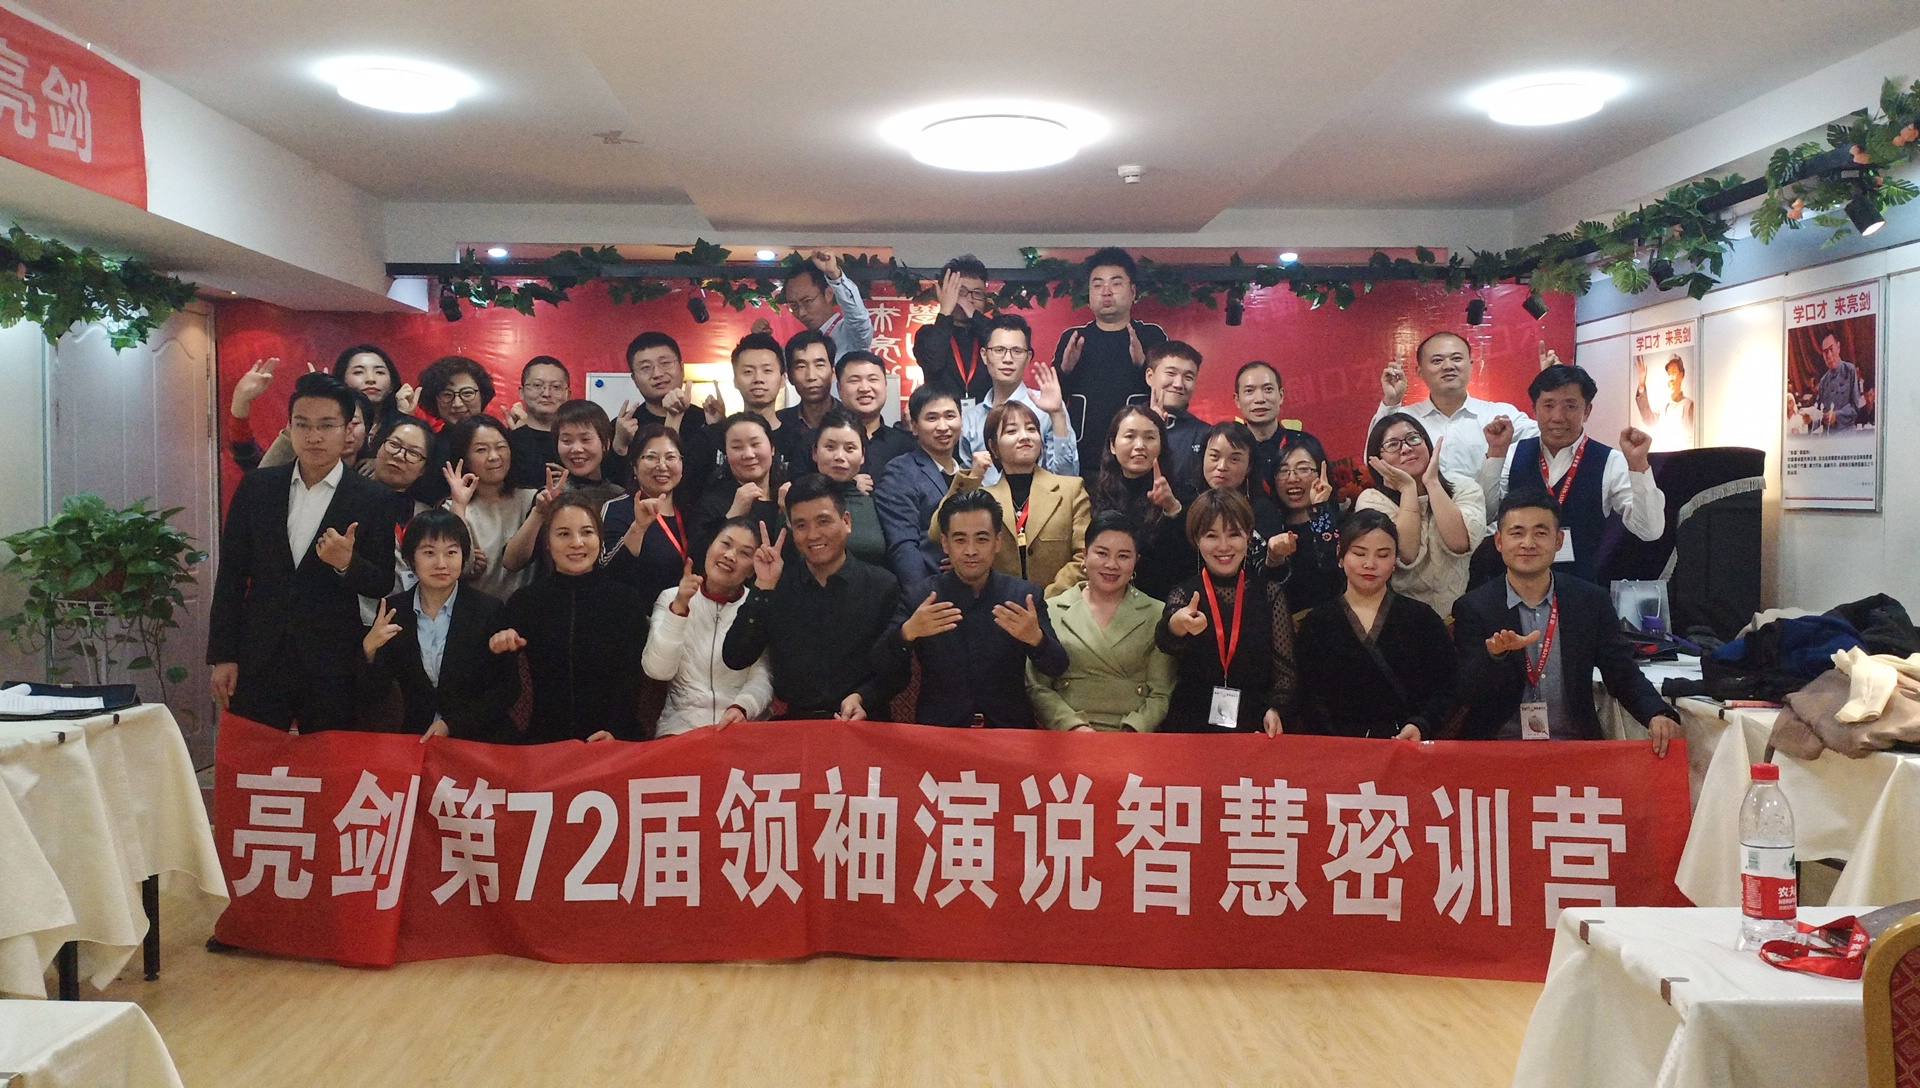 12月5日第72届领袖课堂刘娜的第二天作业